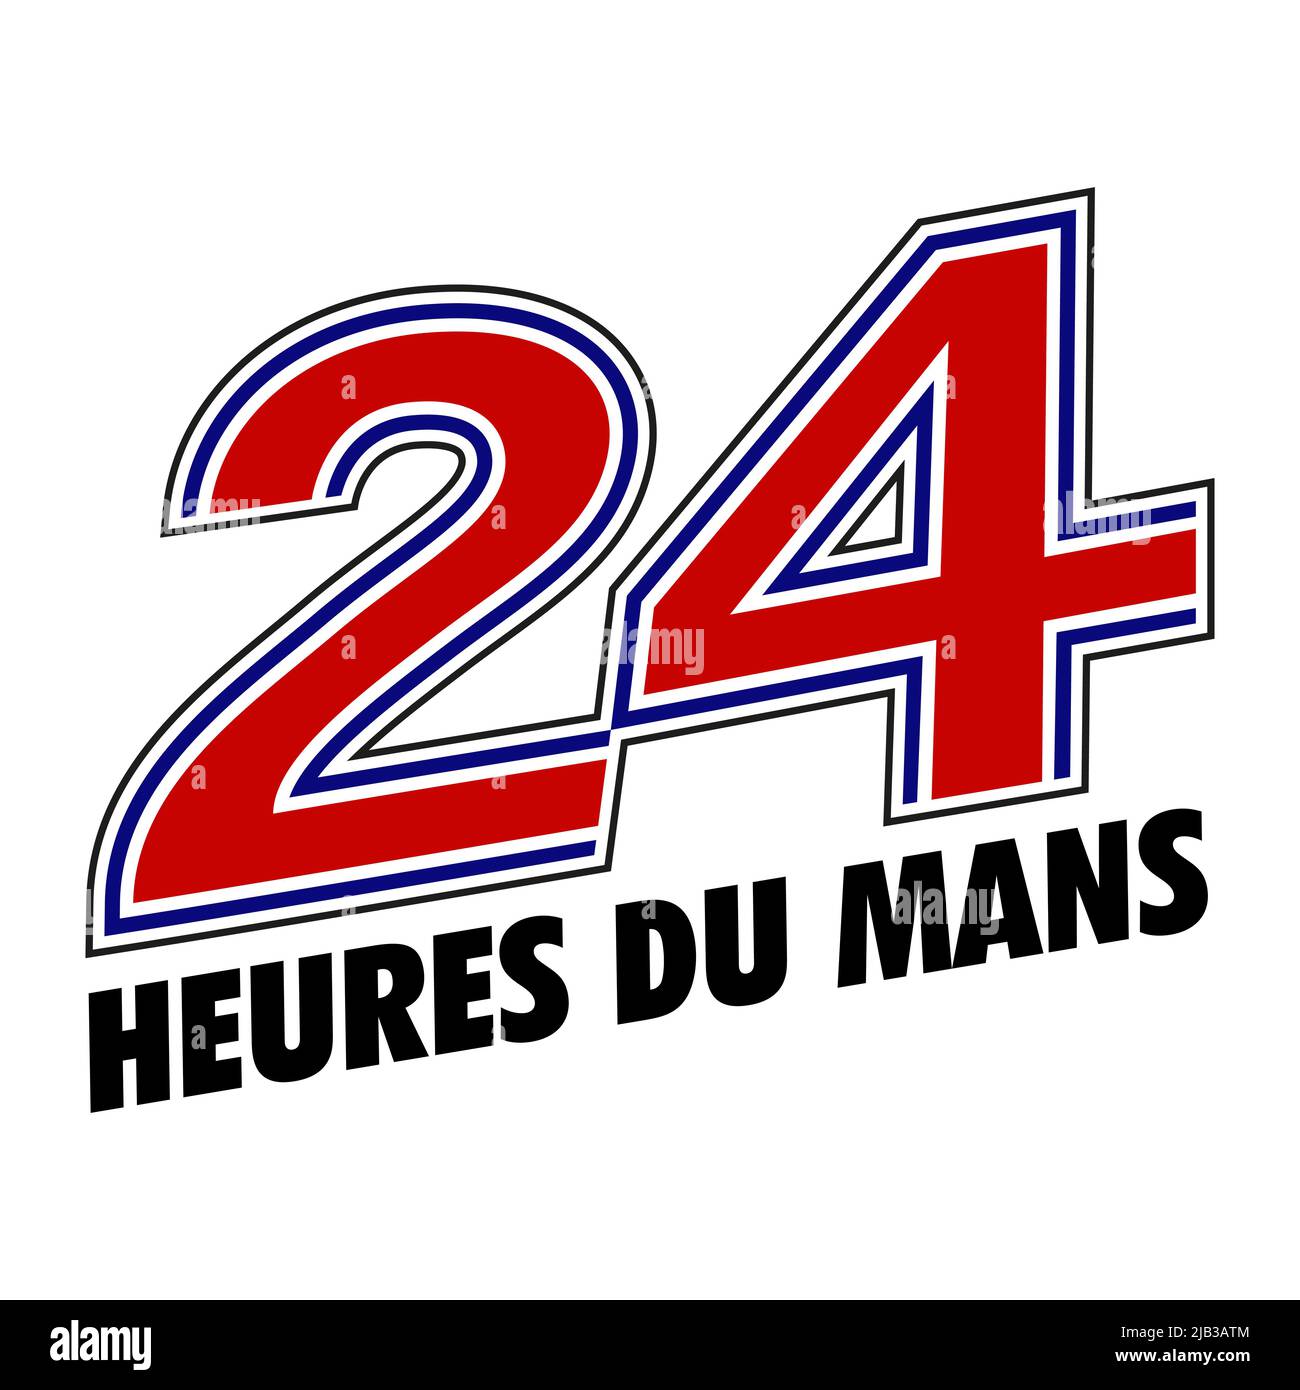 Vinnytsia, Ukraine - June 1, 2022: 24 Hours of Le Mans logo brand. The oldest sportscar endurance race in France Stock Vector